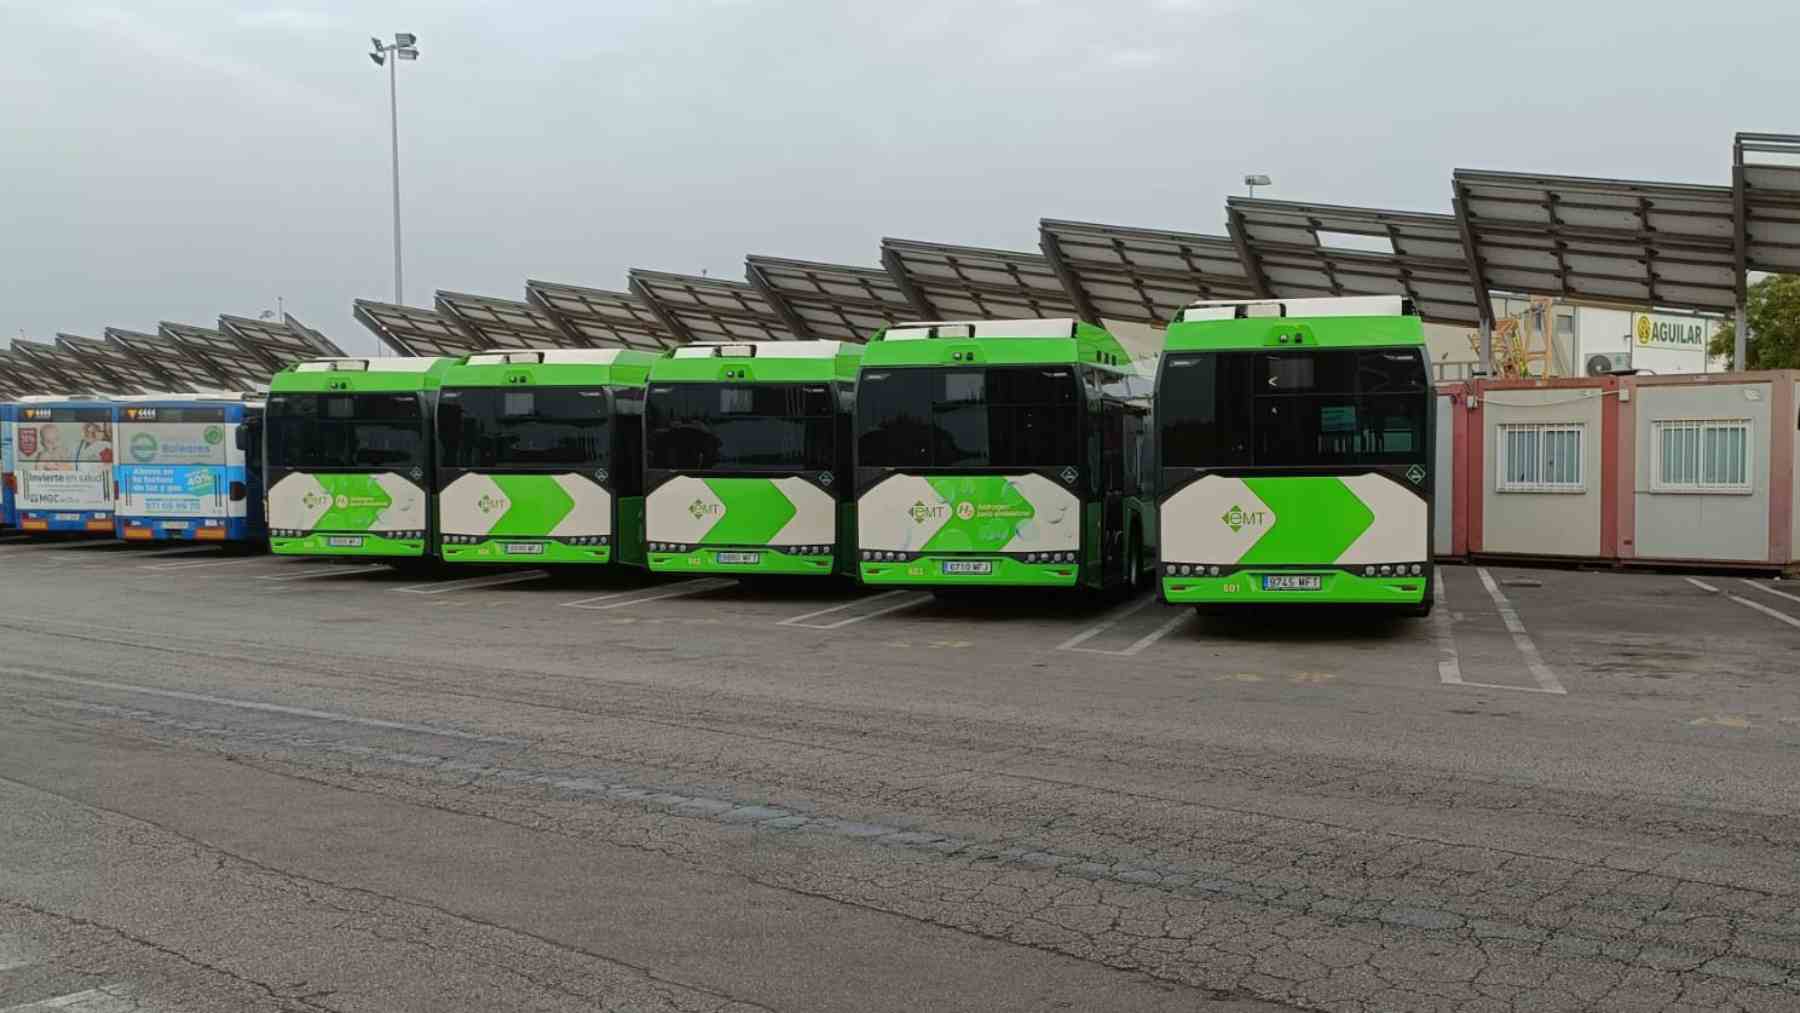 Imagen de los autobuses de hidrógeno estacionados en el aparcamiento de la EMT.